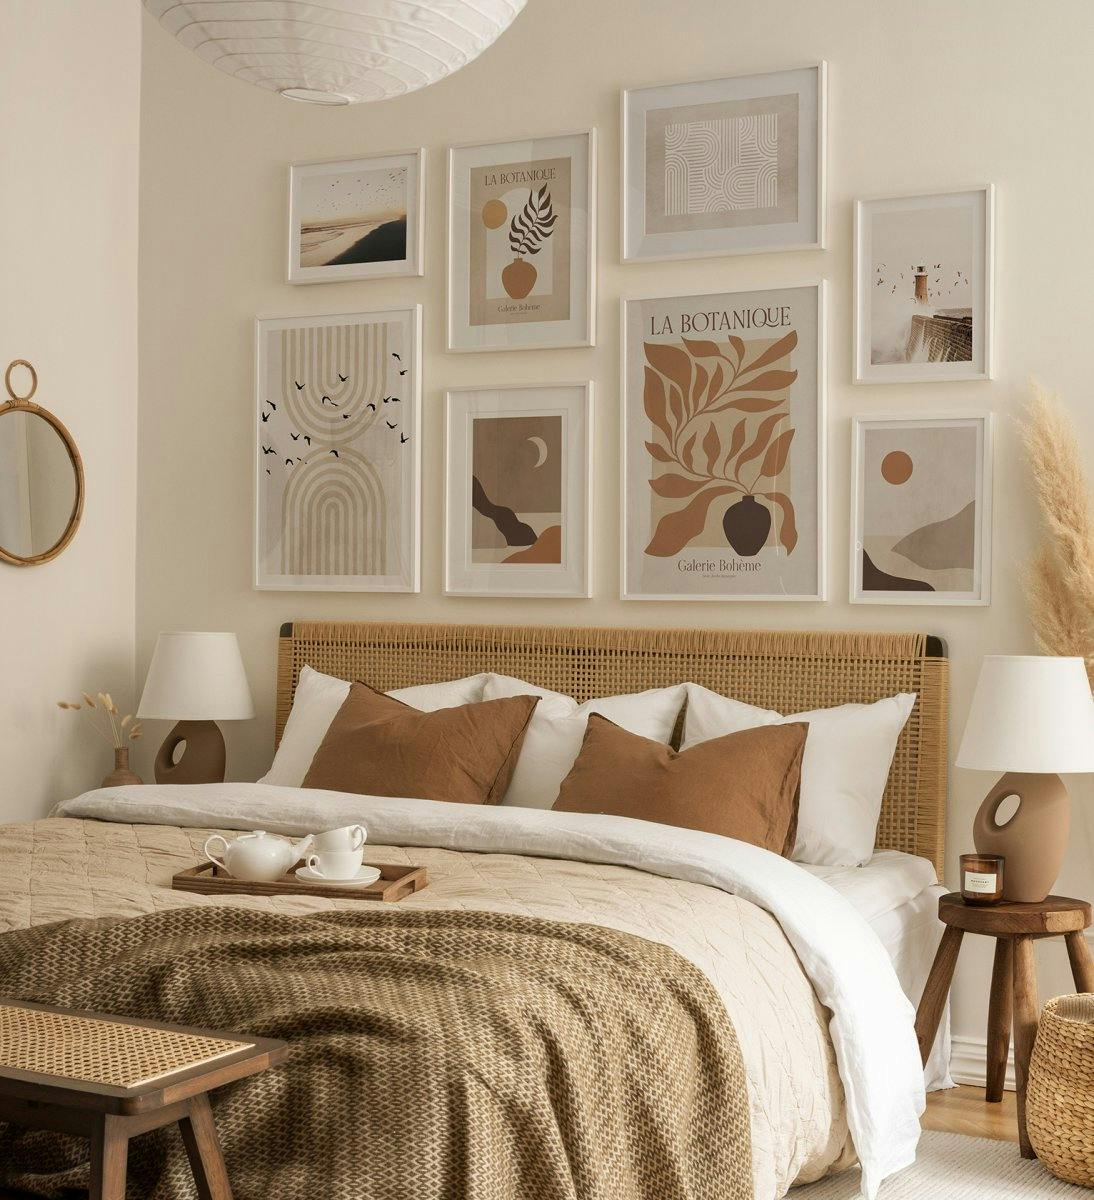 Modern, bézs és barna galériafal absztrakt művészi mintákkal, fehér fakerettel a hálószobához